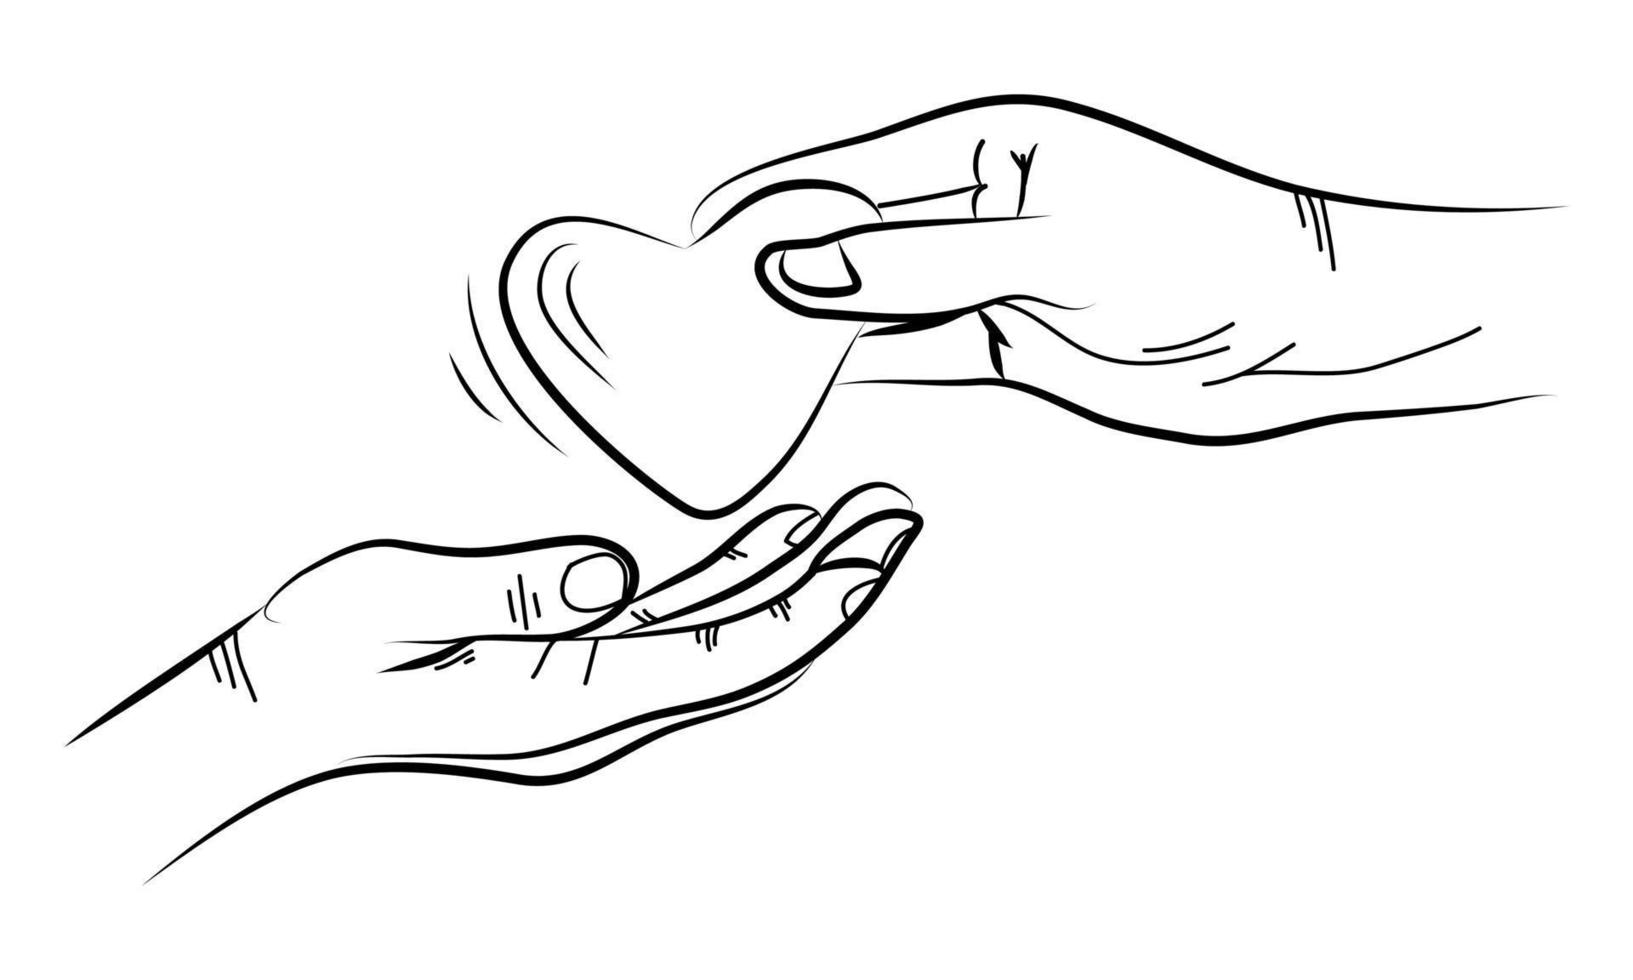 Hand gezeichnet spenden. Konzept der Nächstenliebe und Spende. Hände geben und teilen Liebe zu Menschen. Handgeste im Doodle-Stil. Vektor-Illustration vektor